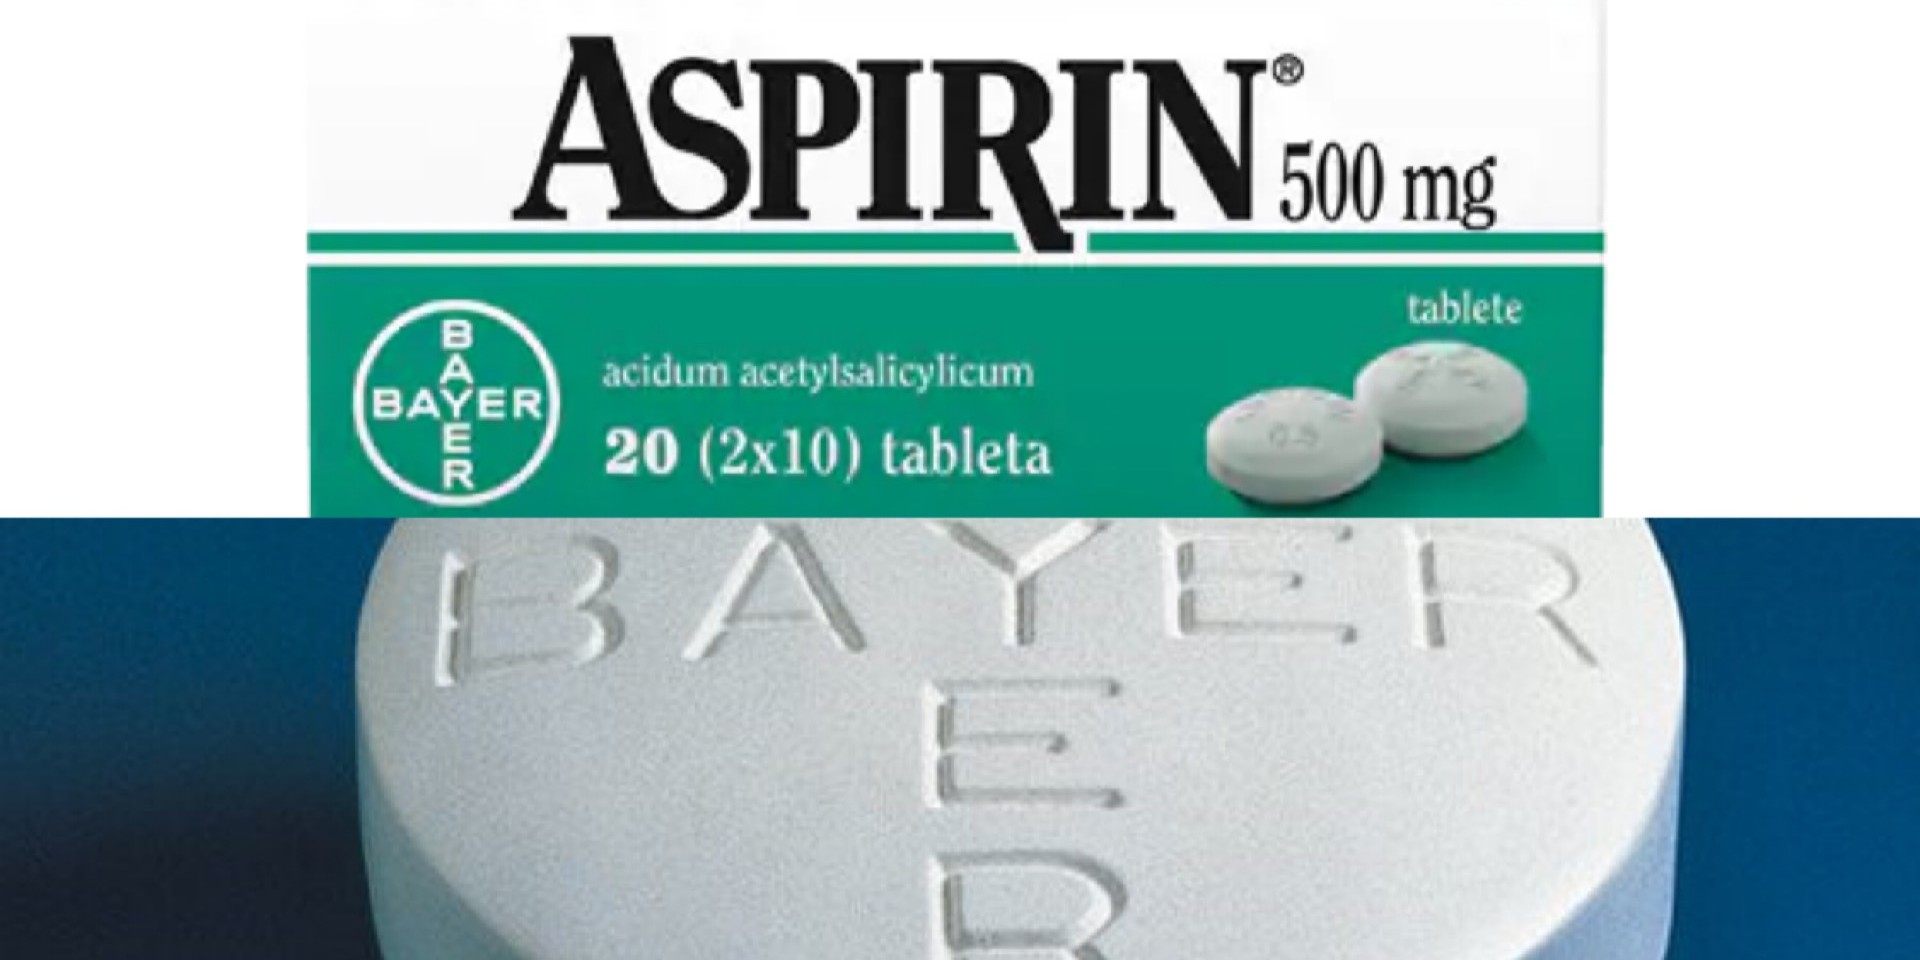 Upotreba aspirina može biti jako opasna za ove osobe